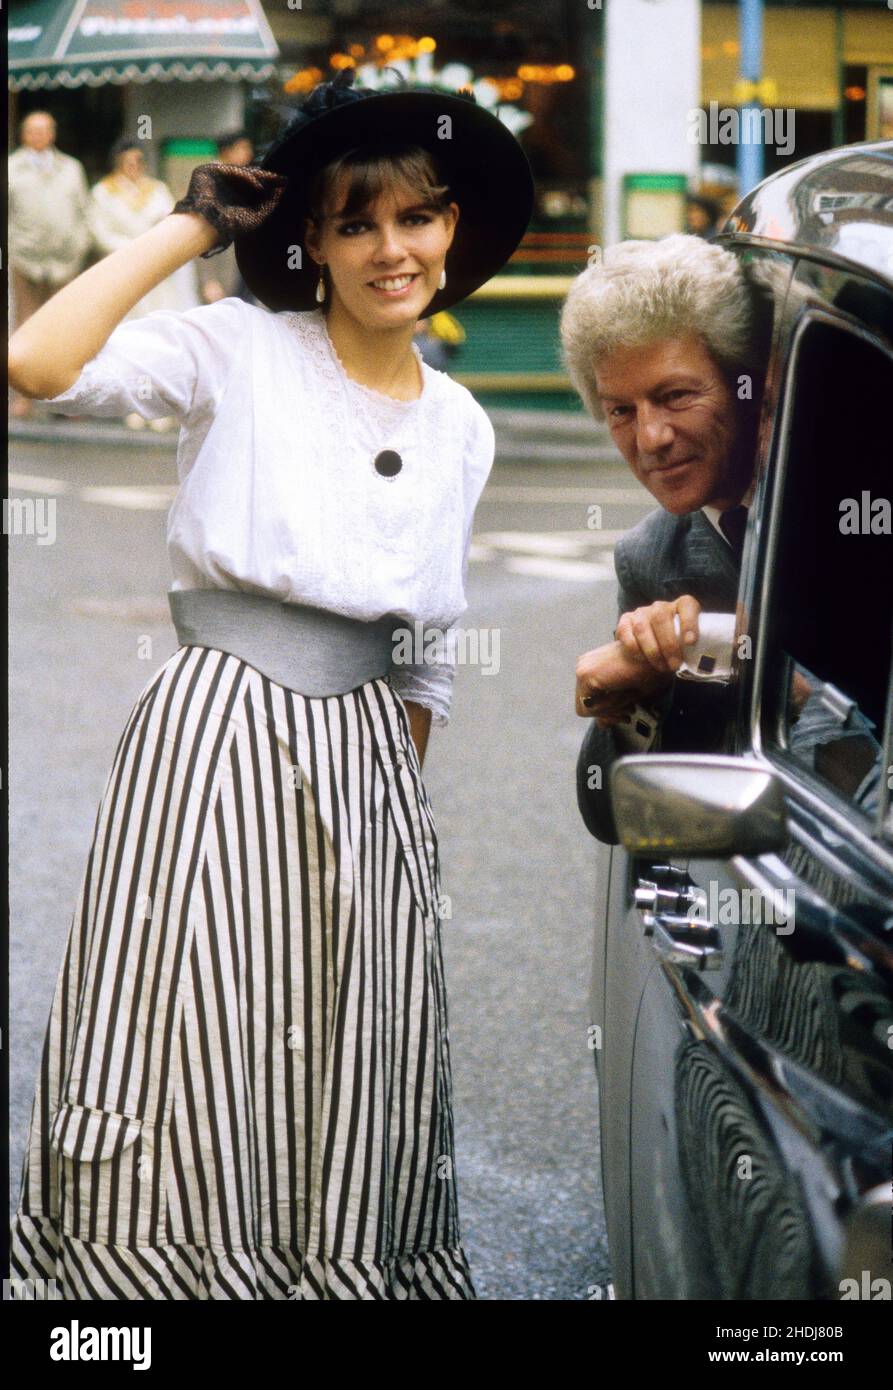 Royal fotografo Lord Lichfield con tassisti figlia Jenny Willson che ha scelto di comparire nel calendario Unipart per novembre 13th 1988 Foto Stock